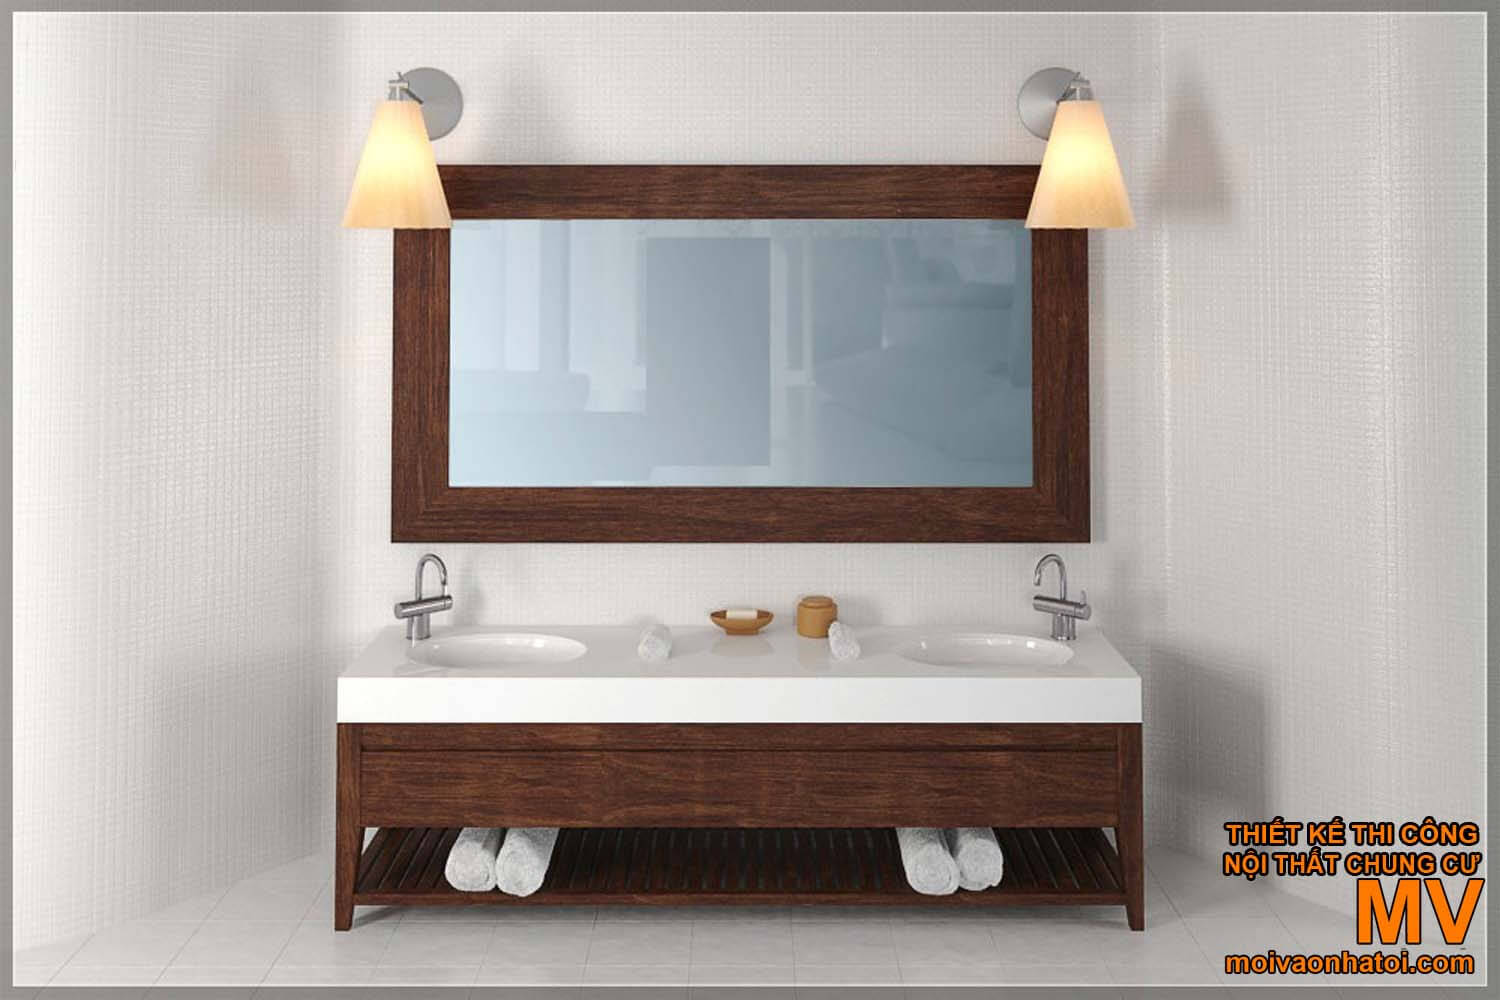 lavabo wash face, bellissimo design del bagno moderno